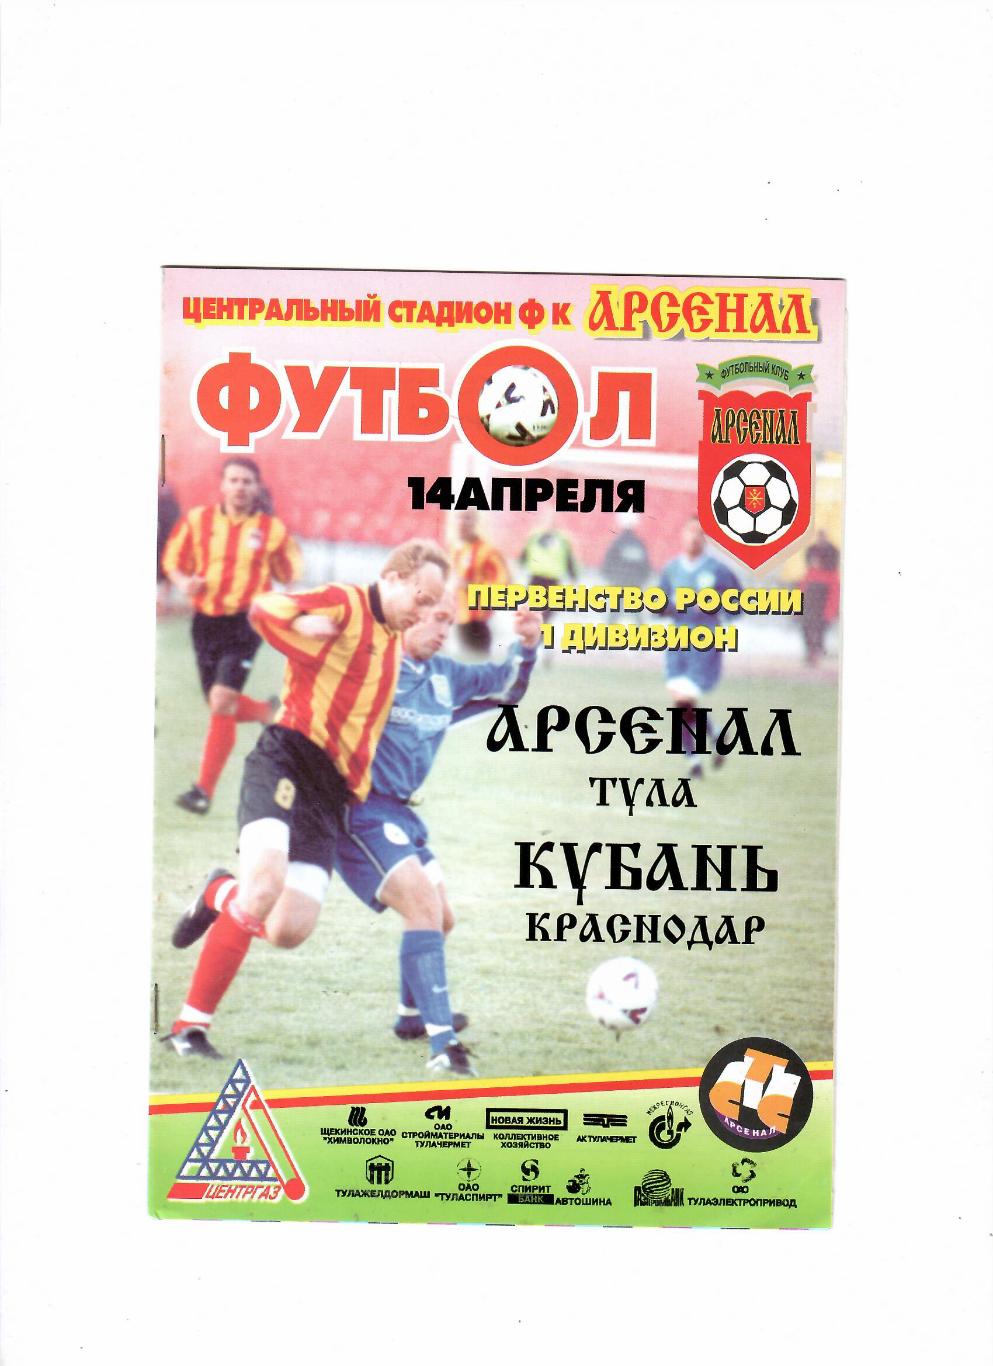 Арсенал Тула-Кубань Краснодар 2001